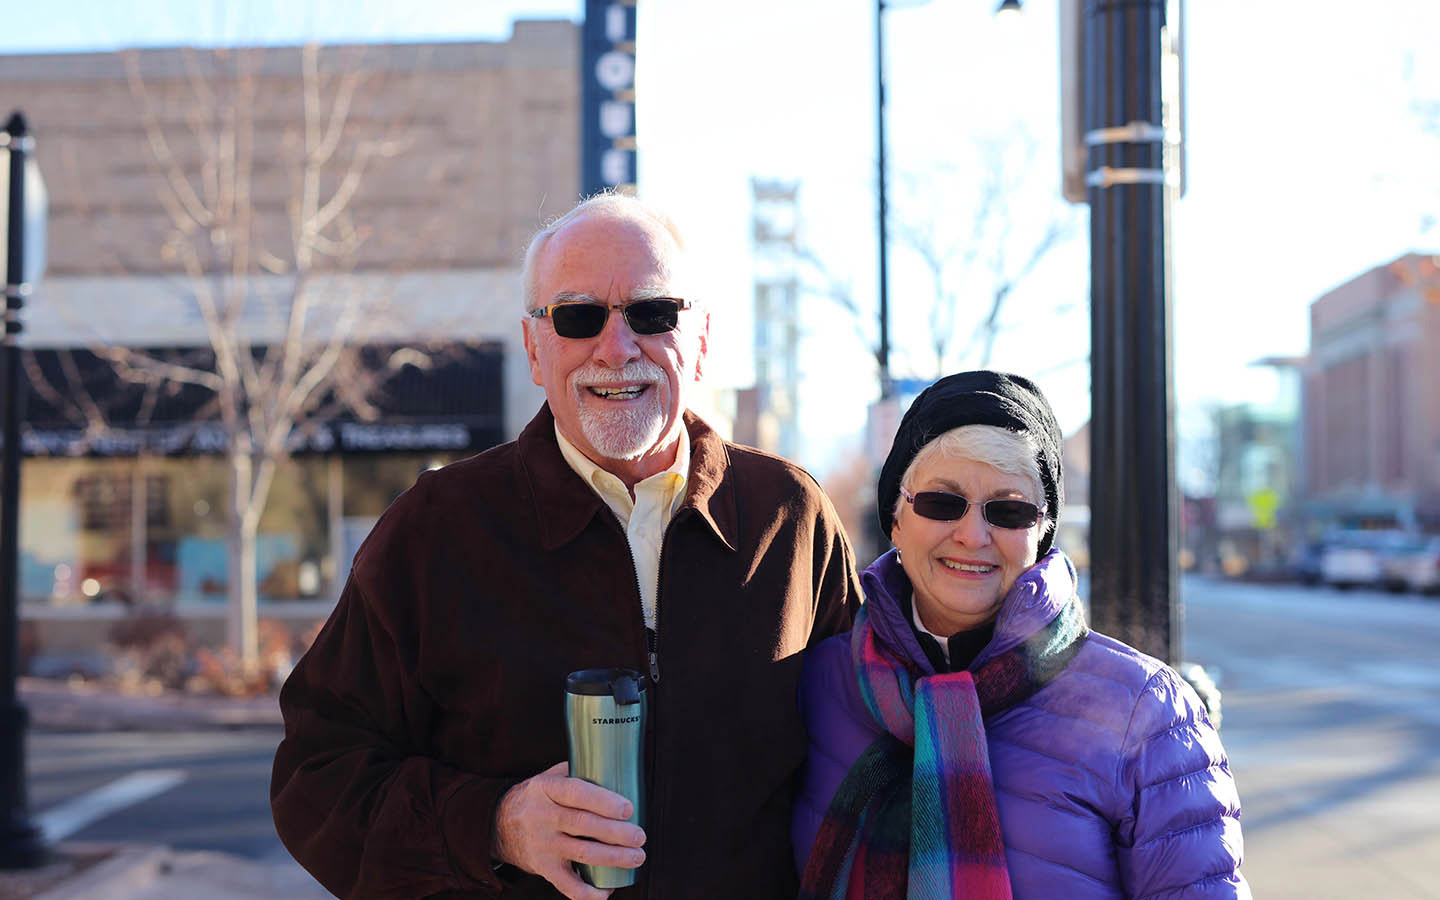 Tom, uživatel systému Cochlear, a jeho manželka Brenda pózují pro fotografii na ulici